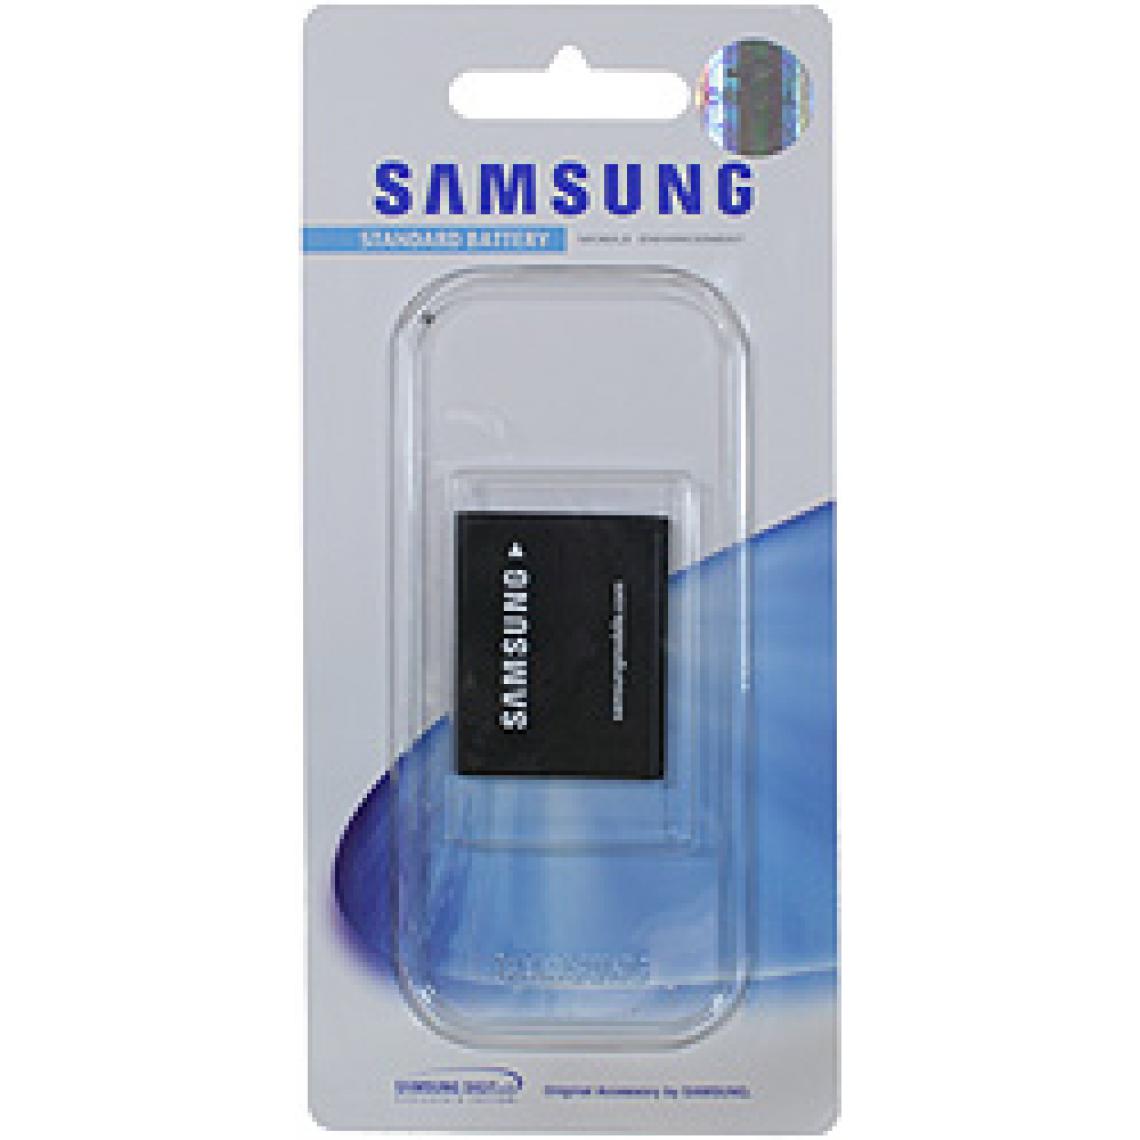 Samsung - Batterie Samsung AB494051BE / AB494051BU pour i450 - Autres accessoires smartphone